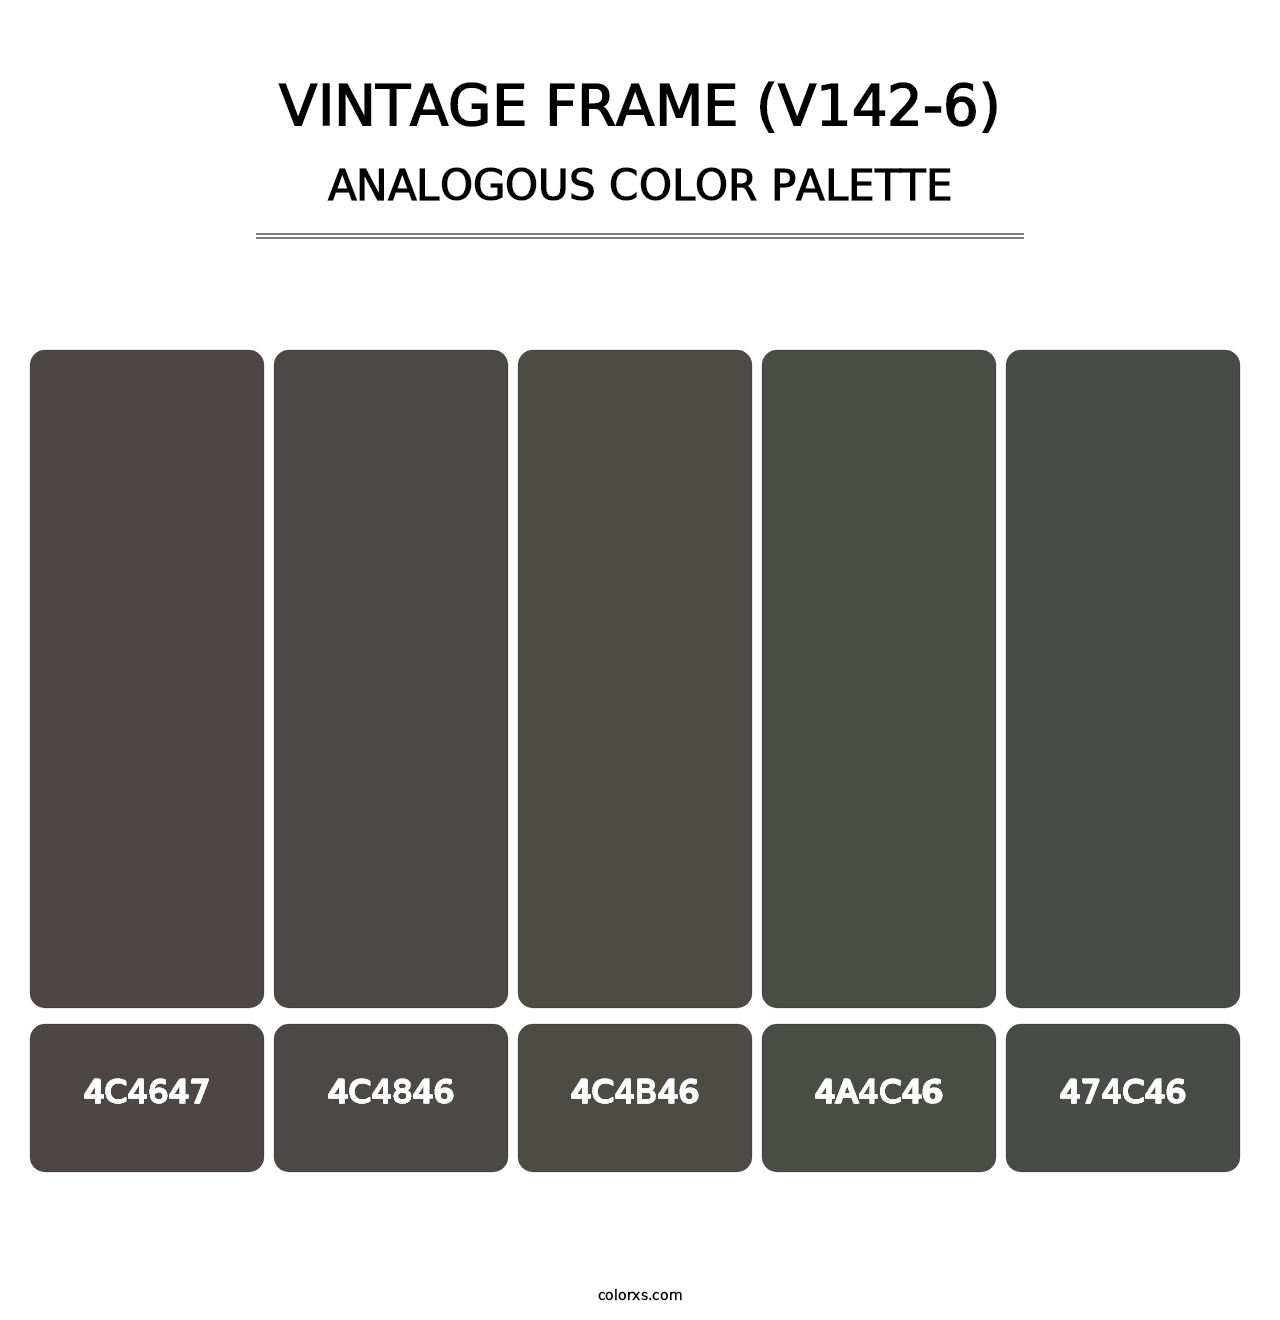 Vintage Frame (V142-6) - Analogous Color Palette